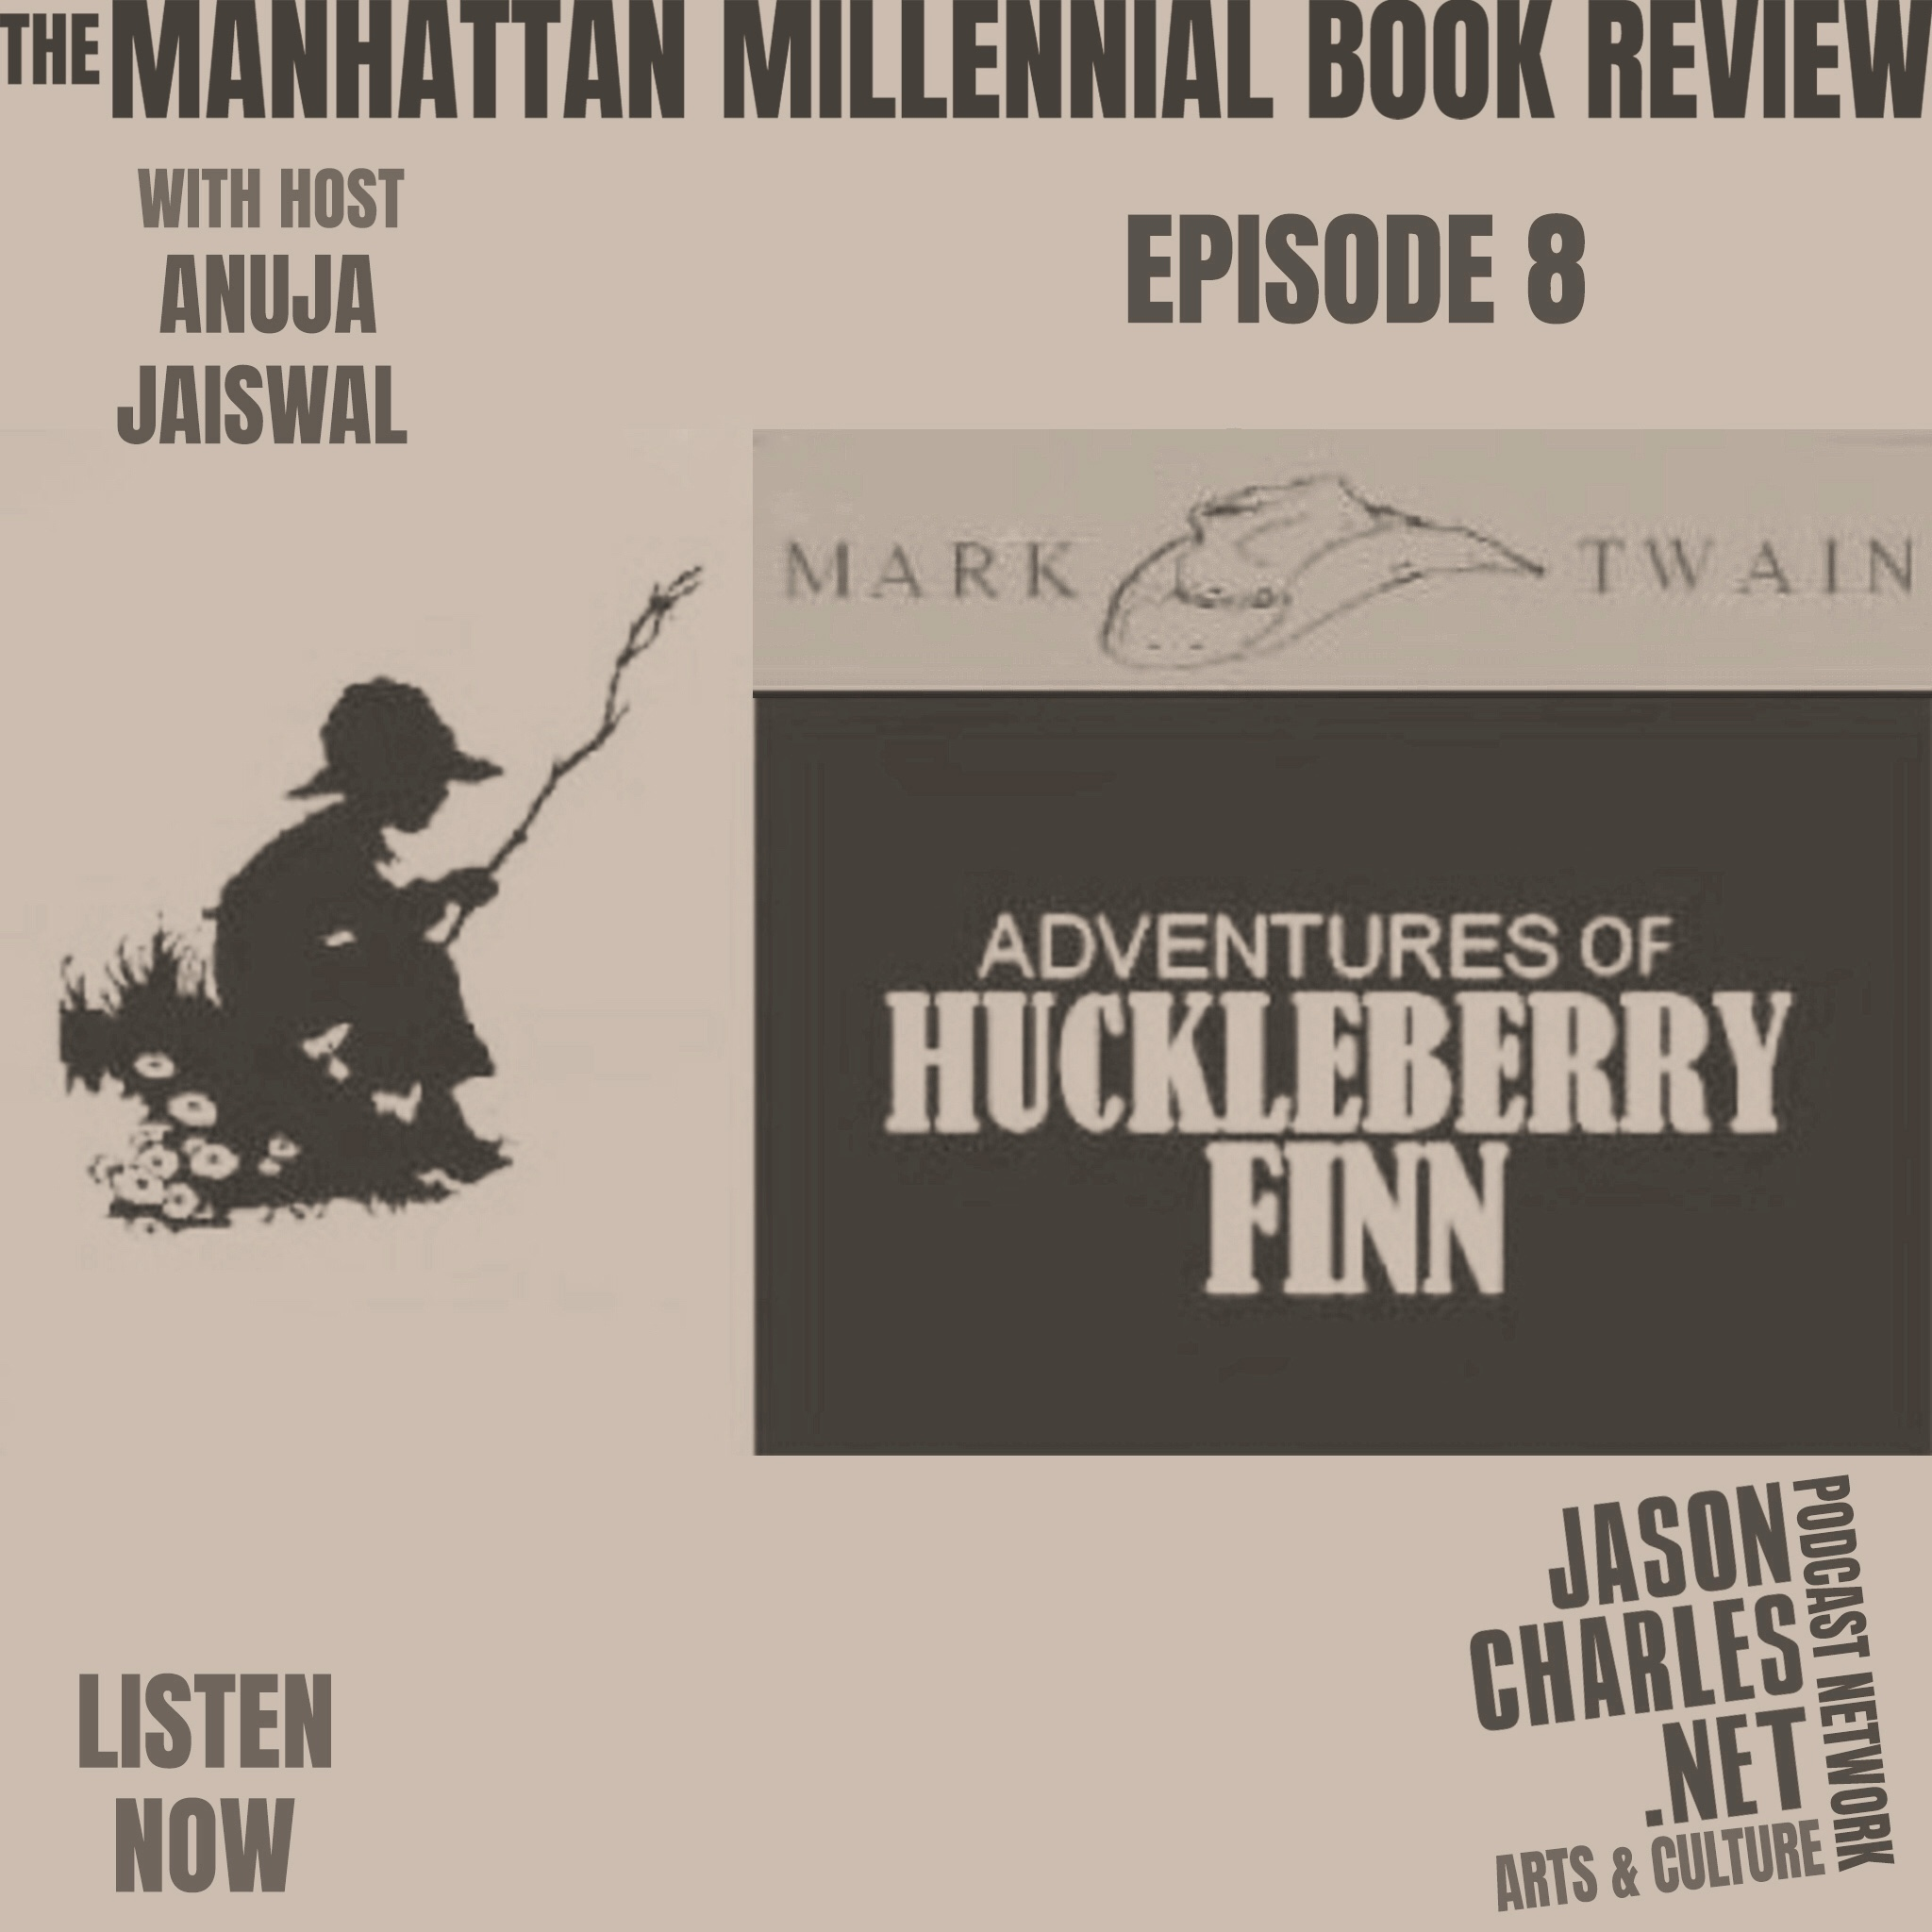 THE MANHATTAN MILLENNIAL BOOK REVIEW Episode 8 The Adventures of Huckleberry Finn